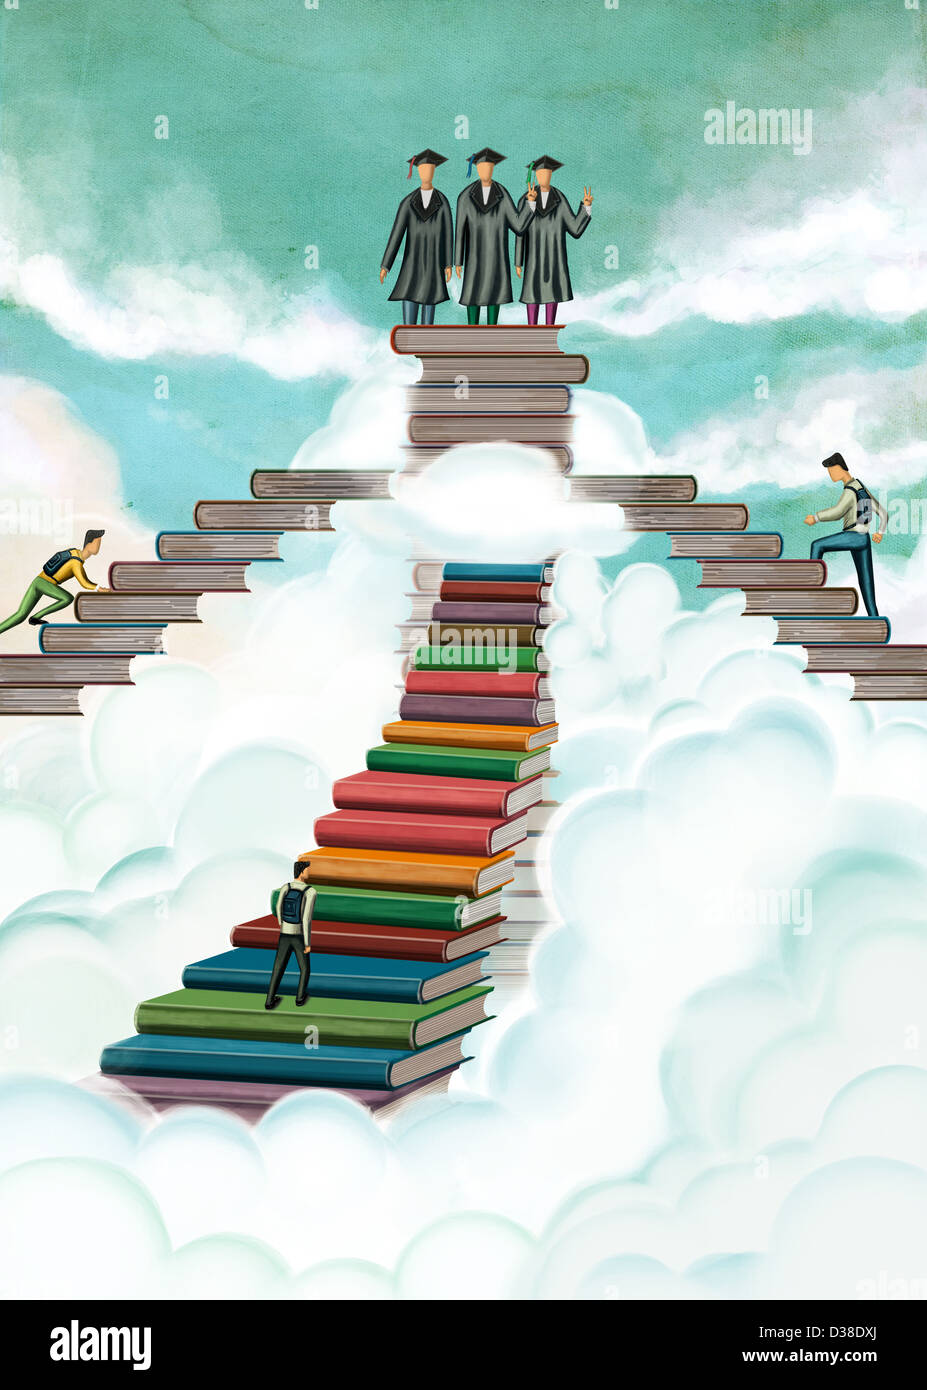 Image d'illustration d'étudiants sur pile de livres représentant le jour de graduation Banque D'Images